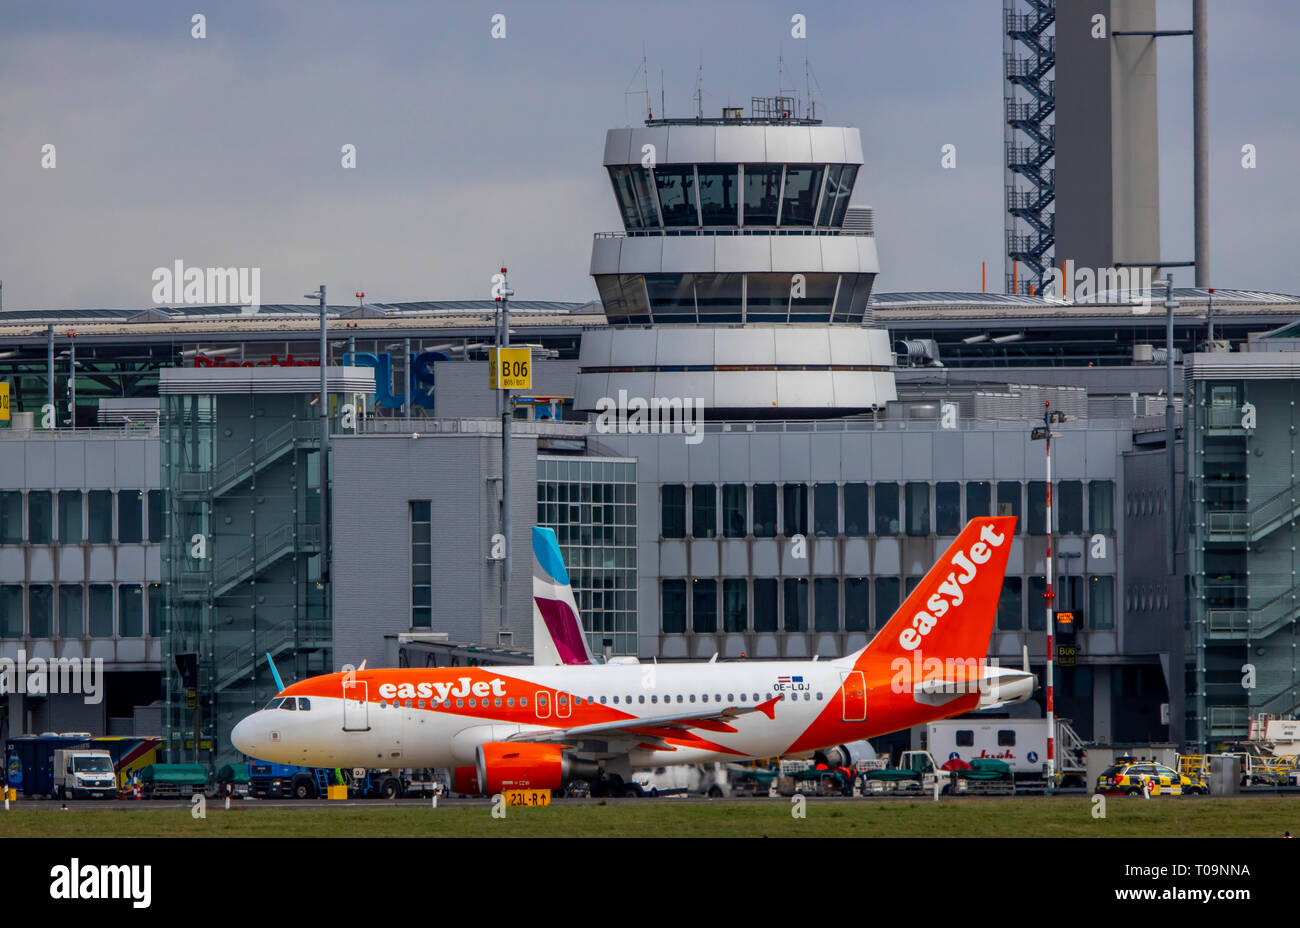 El Aeropuerto Internacional de Dusseldorf, DHE, Eurowings, EasyJet, la Torre de Control del Tráfico Aéreo, Foto de stock